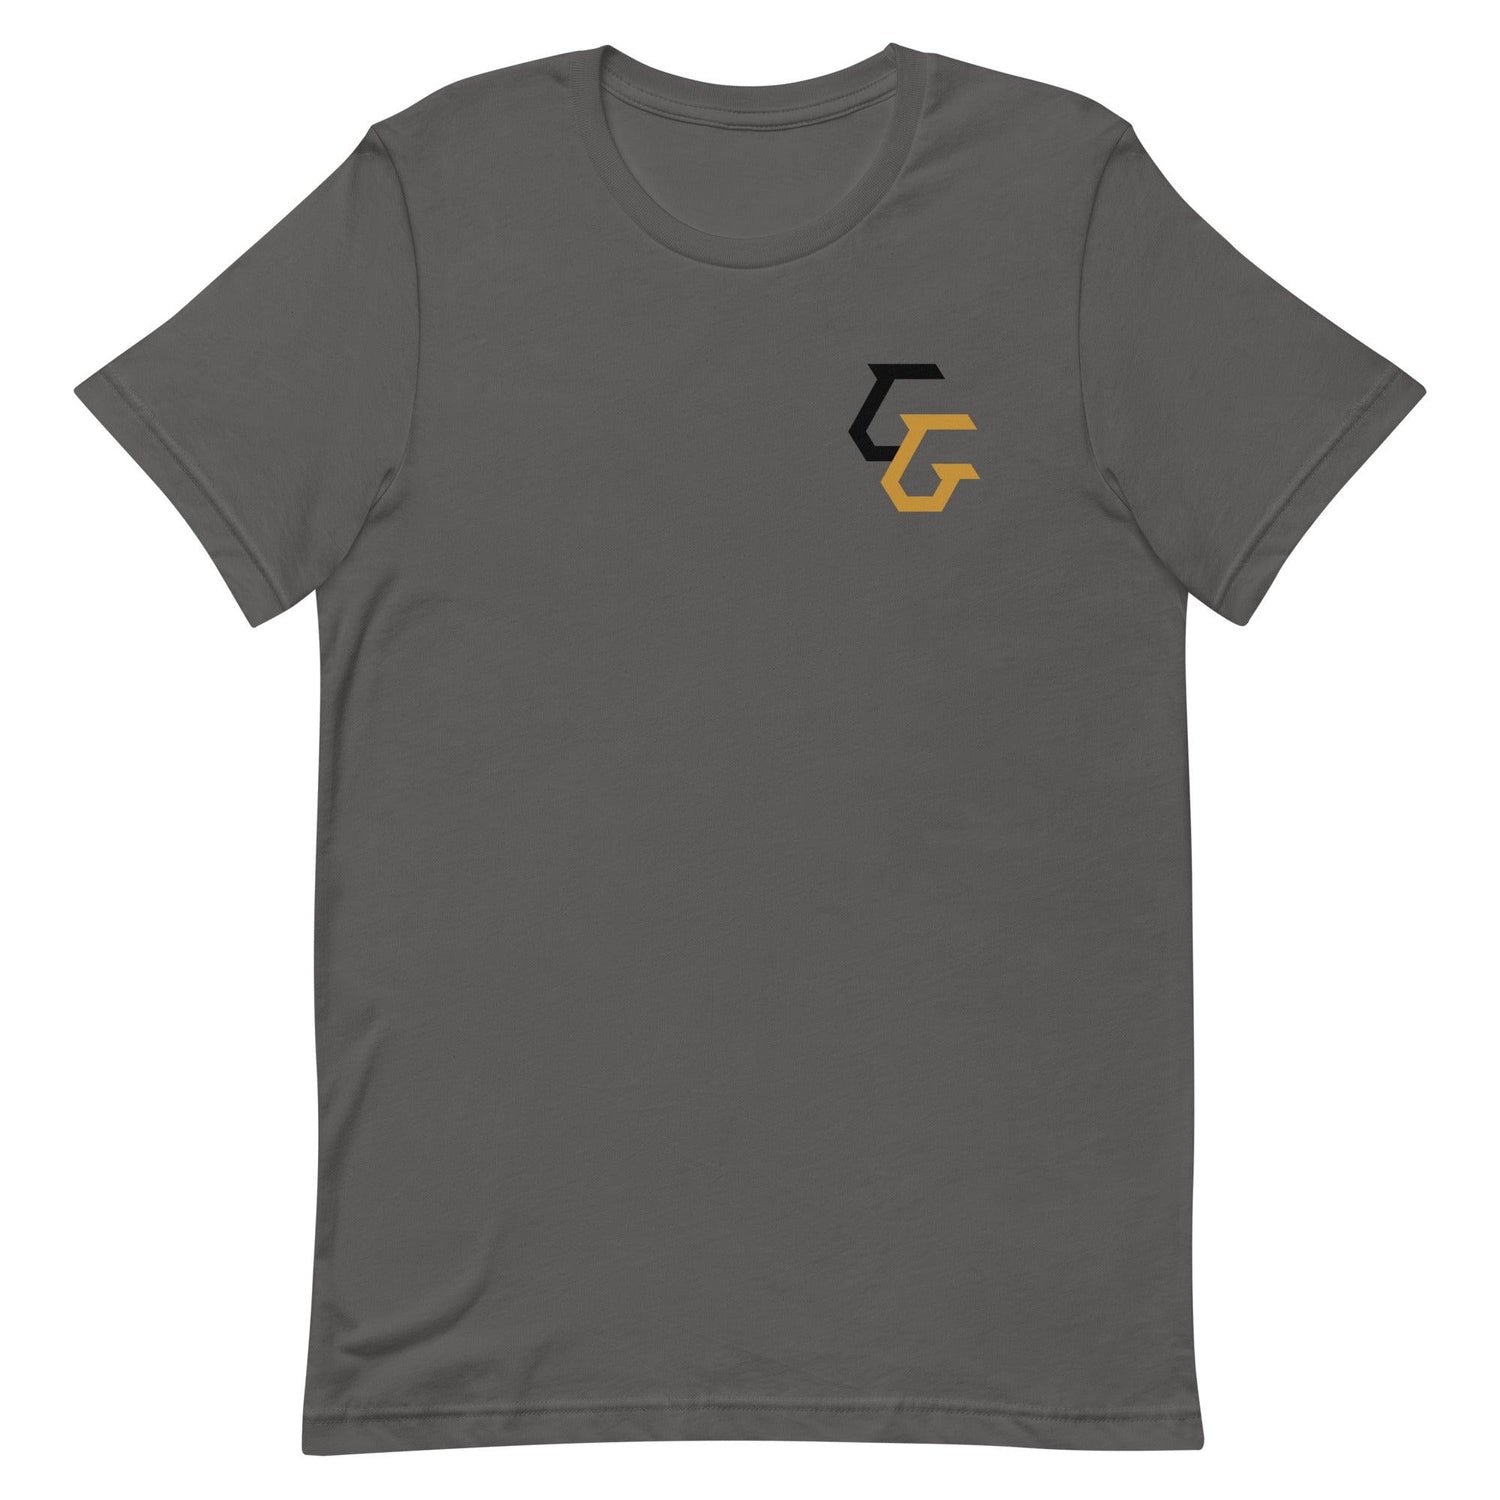 Gunnar Gottula "Essential" t-shirt - Fan Arch